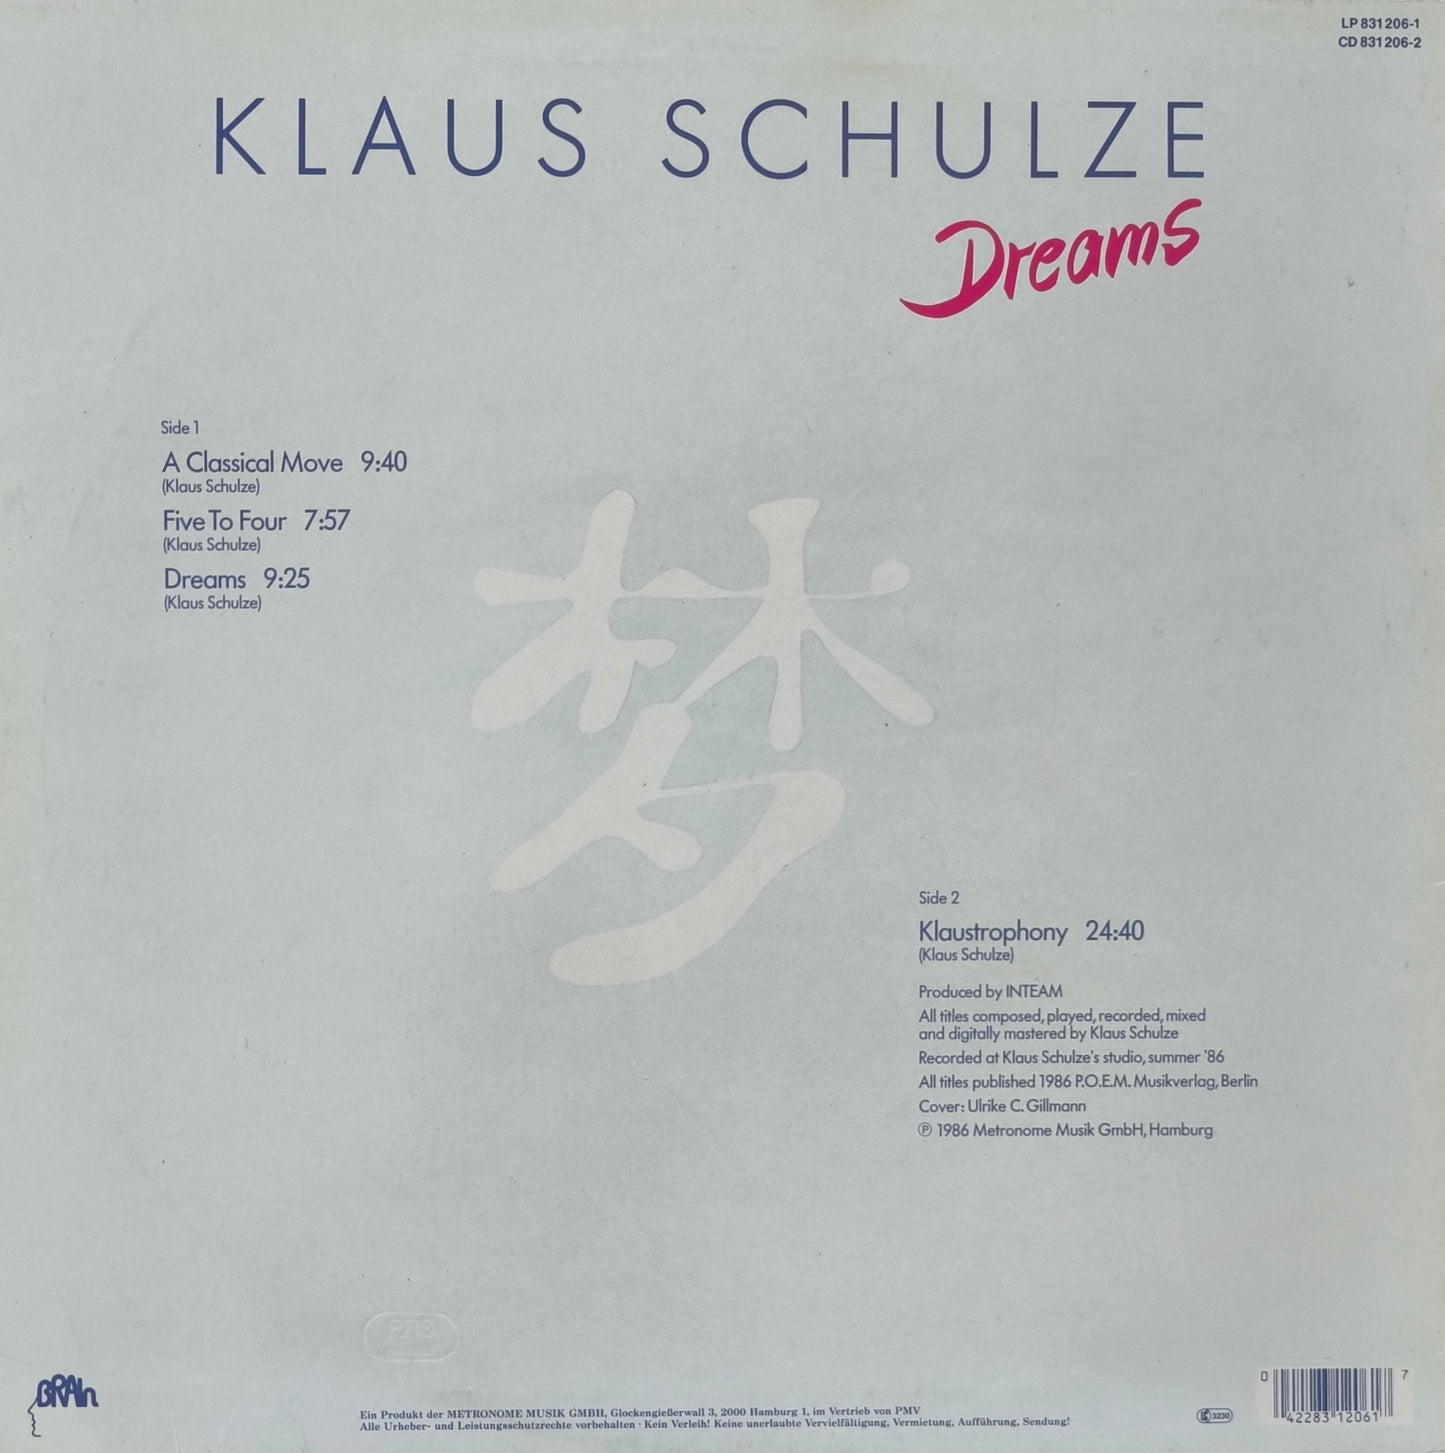 KLAUS SCHULZE - Dreams